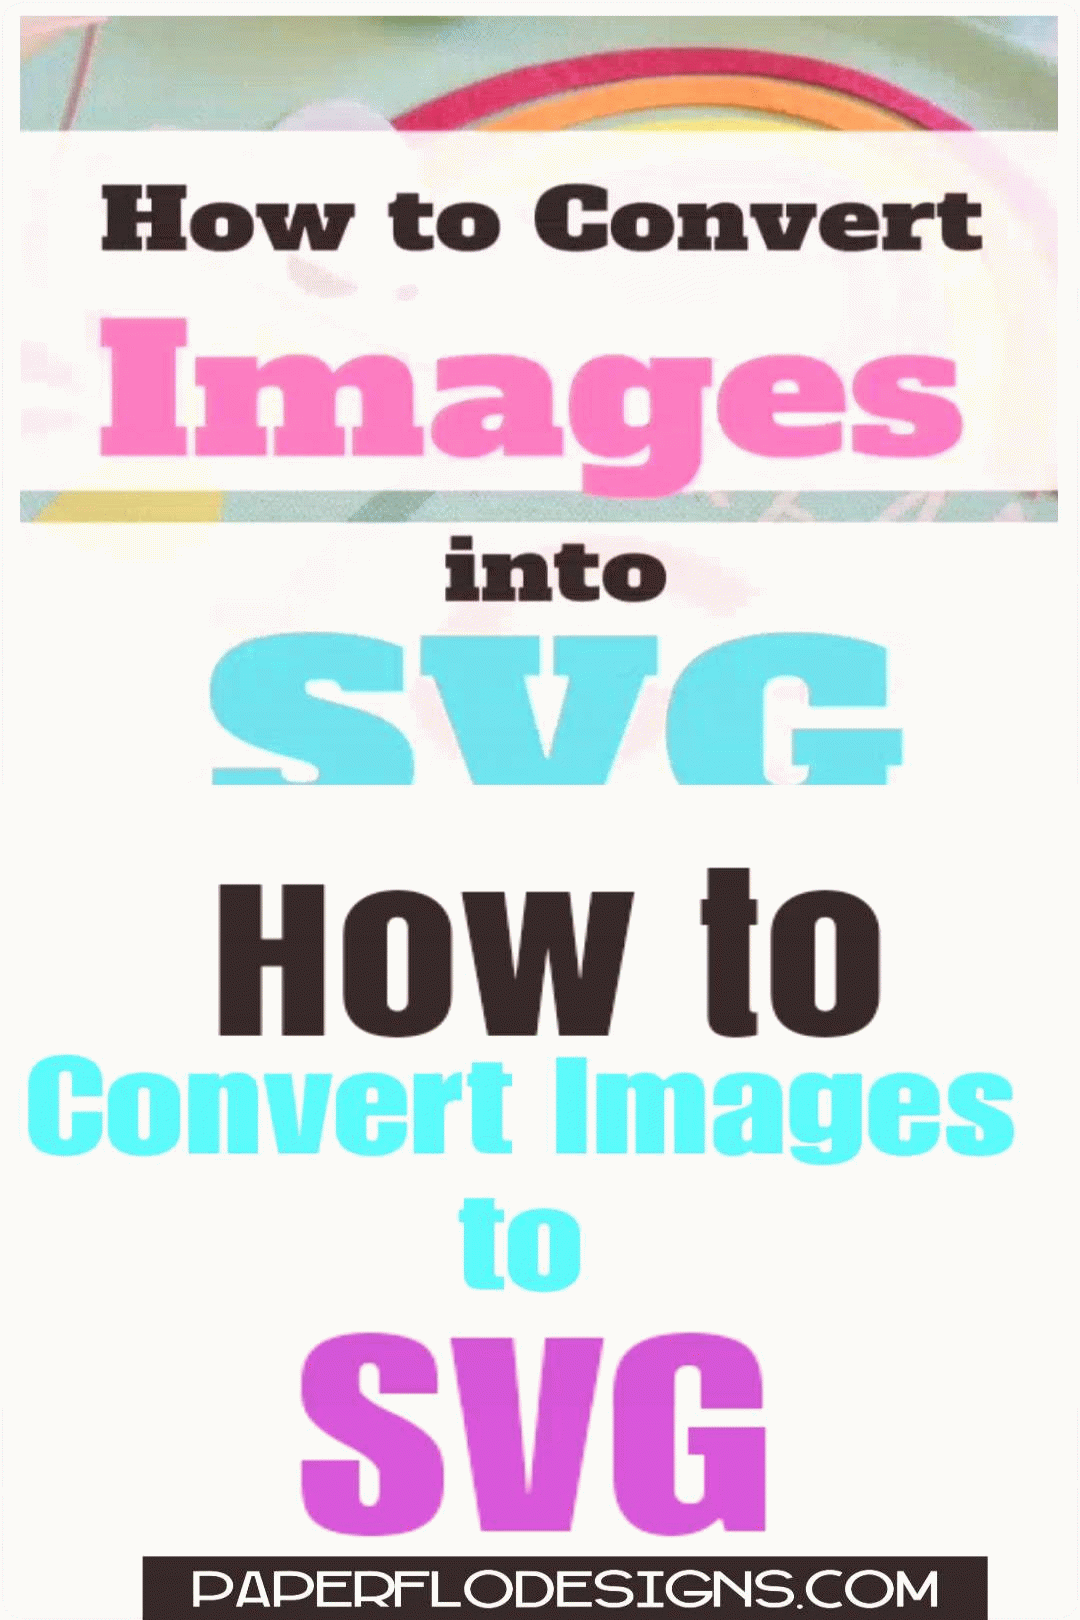 이미지를 SVG로 변환할 수 있습니까?